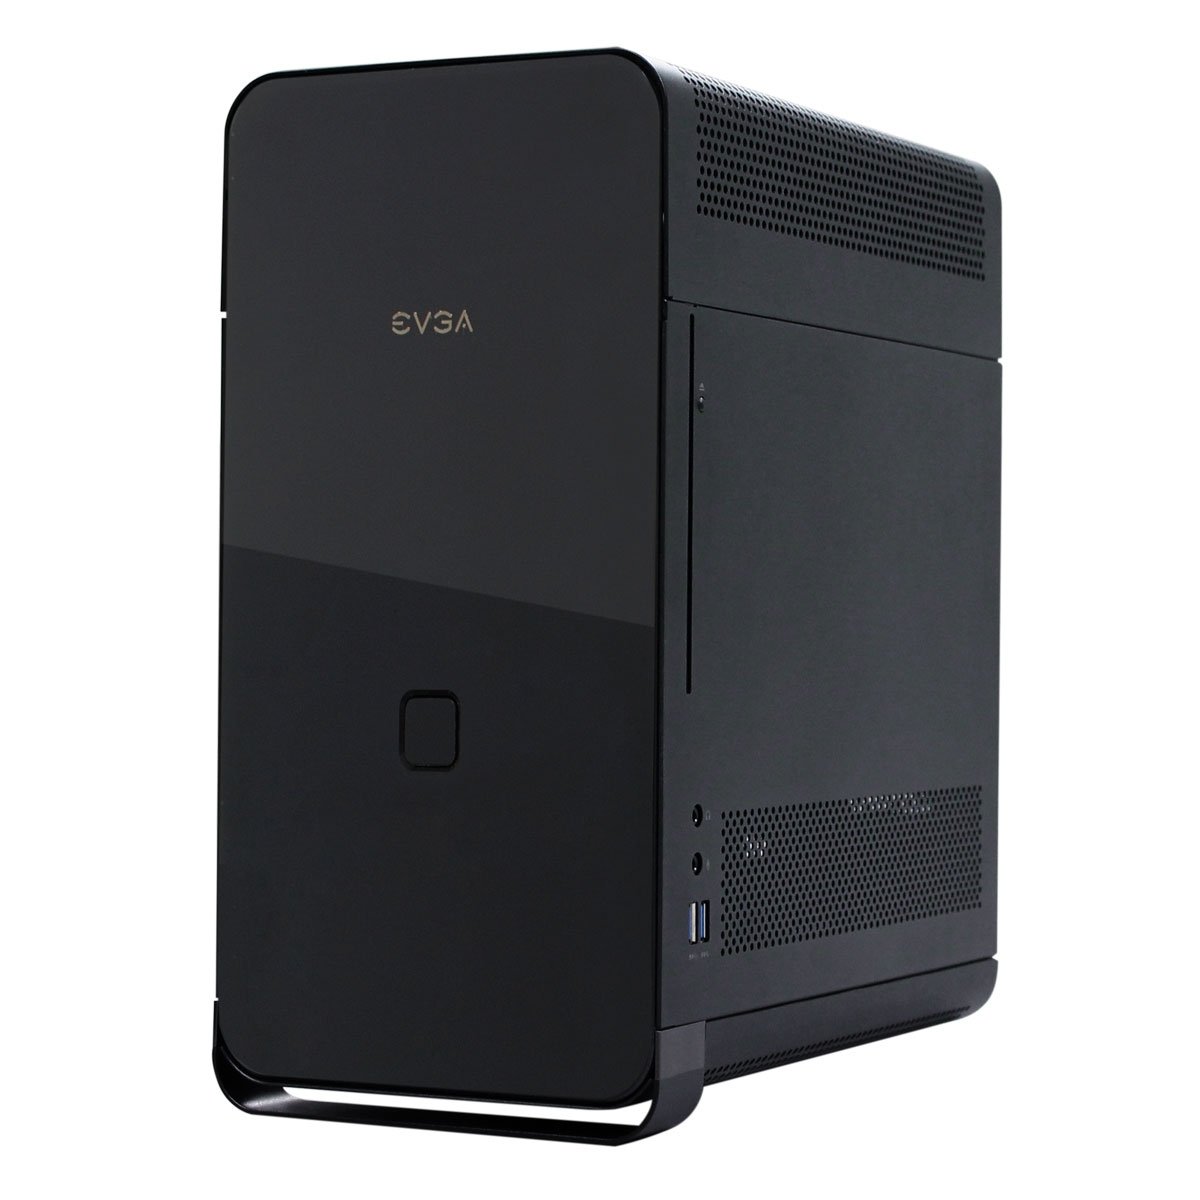 For sale EVGA Hadron Hydro Mini-ITX Case w/500w PSU. Open Box, Great!